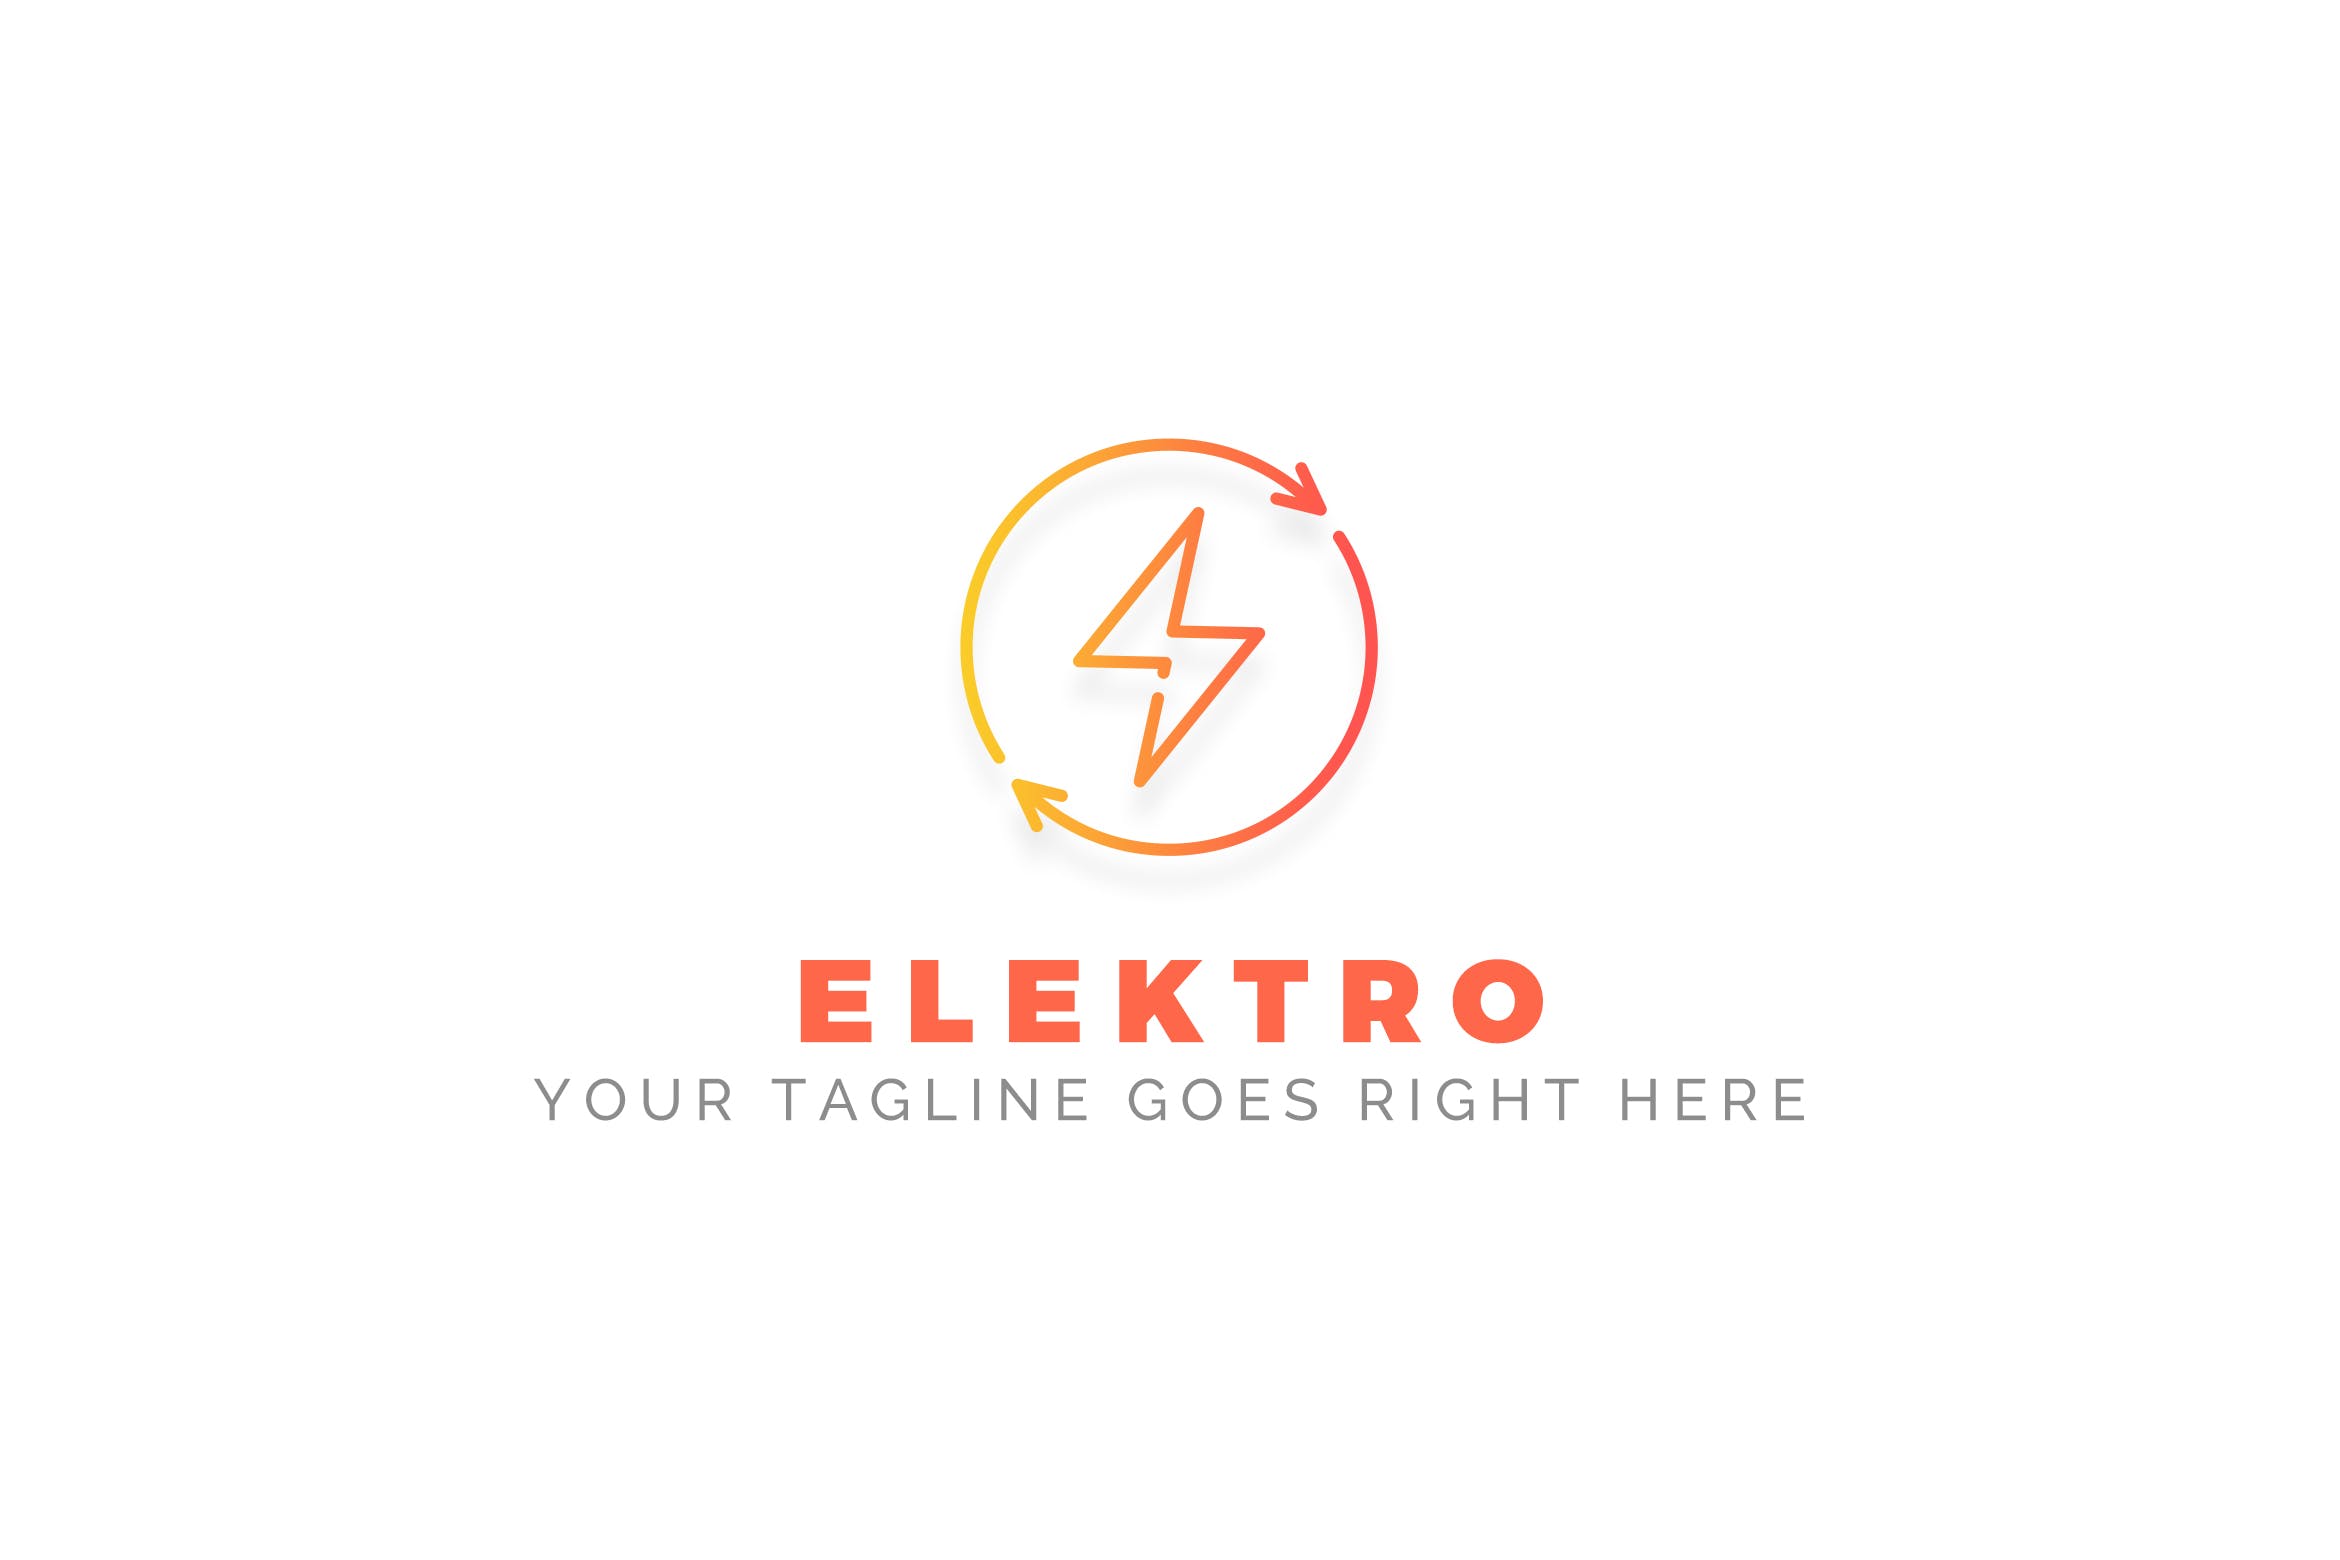 充电宝/移动电源/充电设备品牌Logo设计16图库精选模板 Elektro – Electrician Logo Template插图